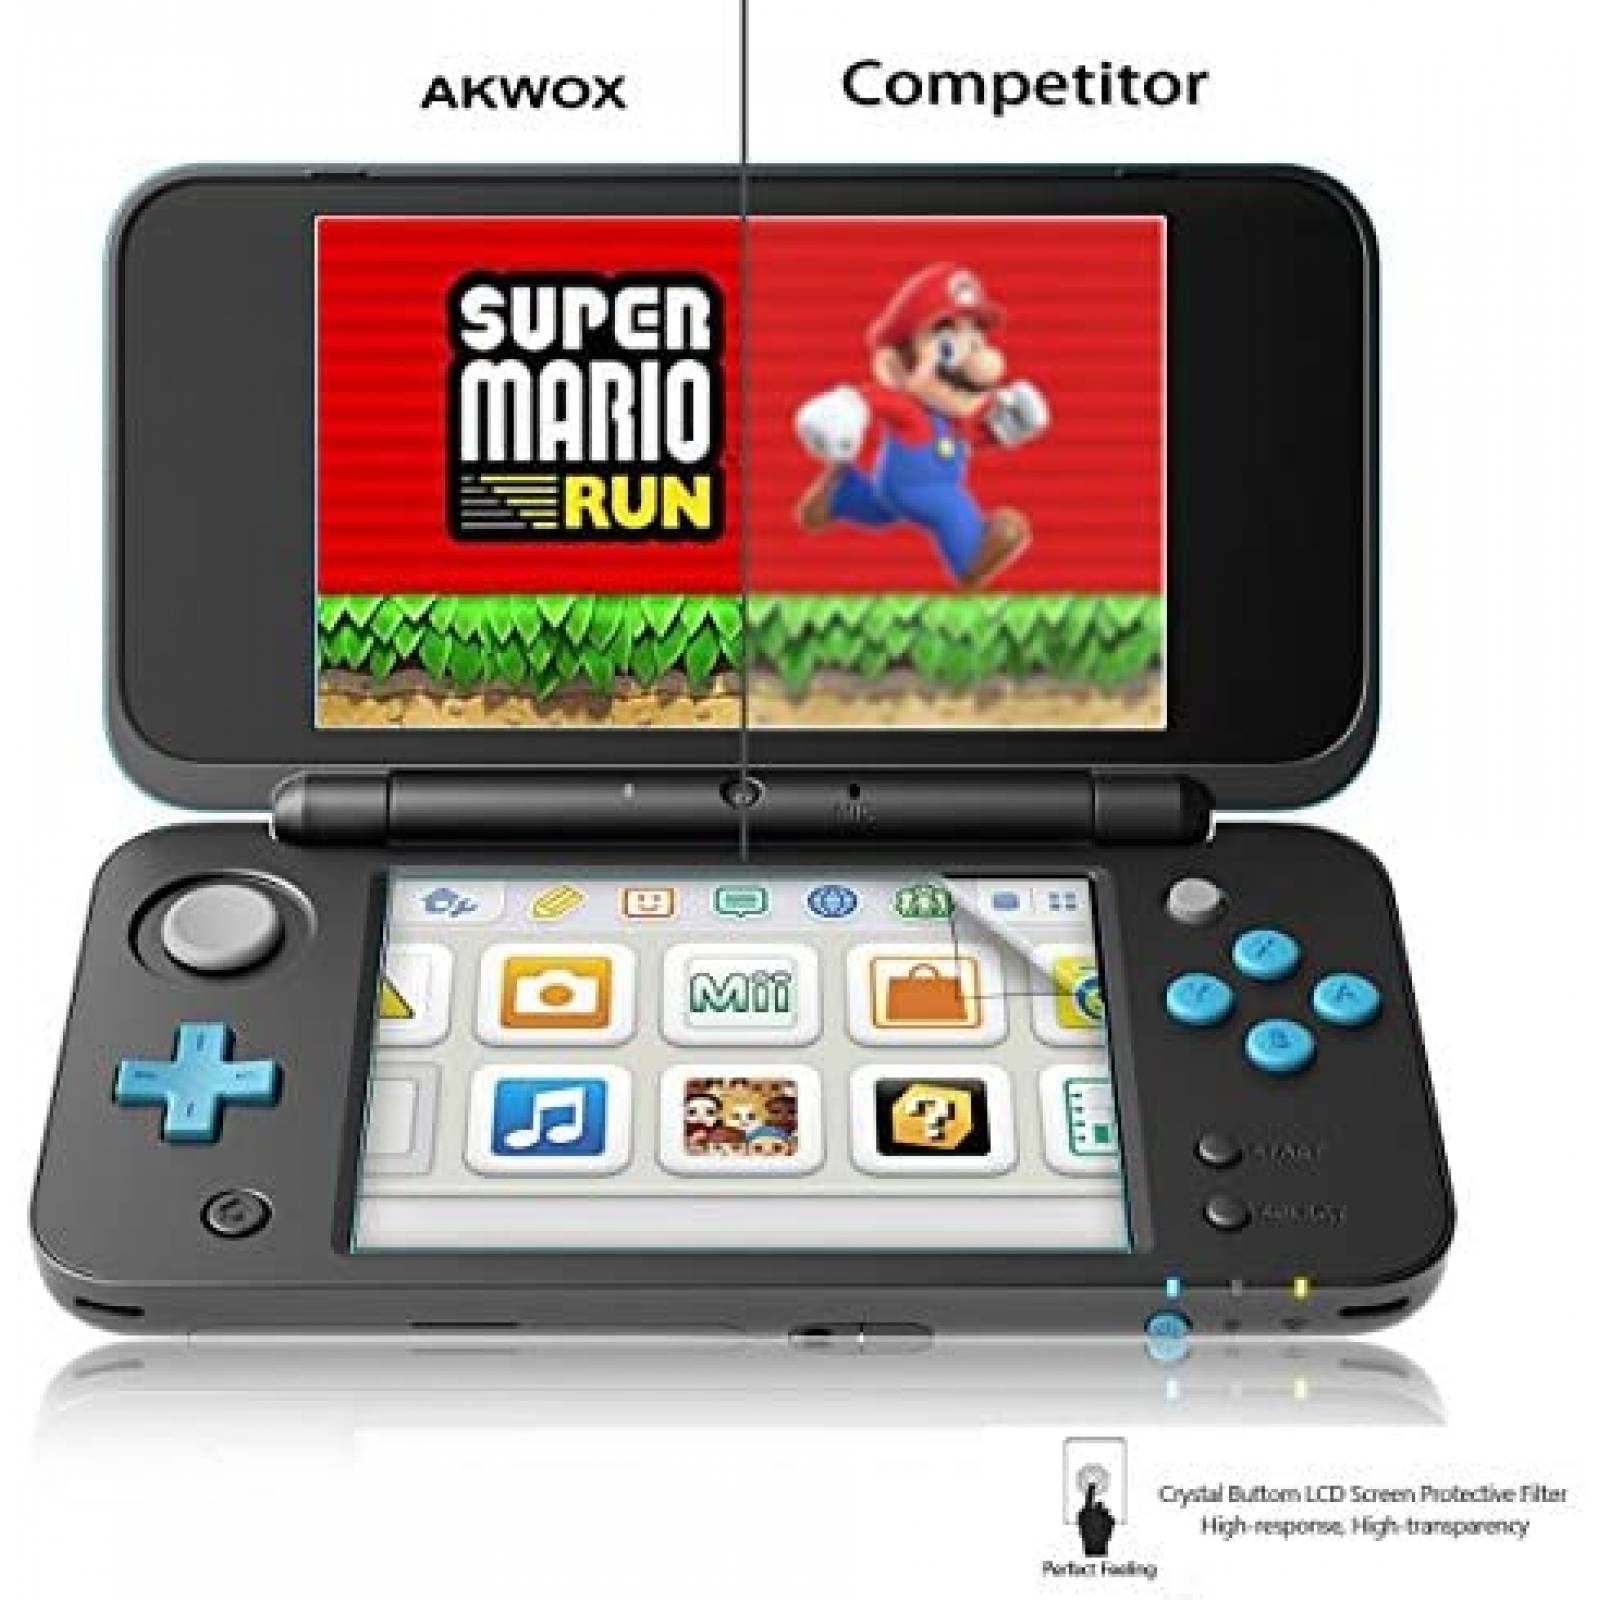 Protectores de Pantalla AKWOX Nintendo 3DS XL 4 Pzs -Transp